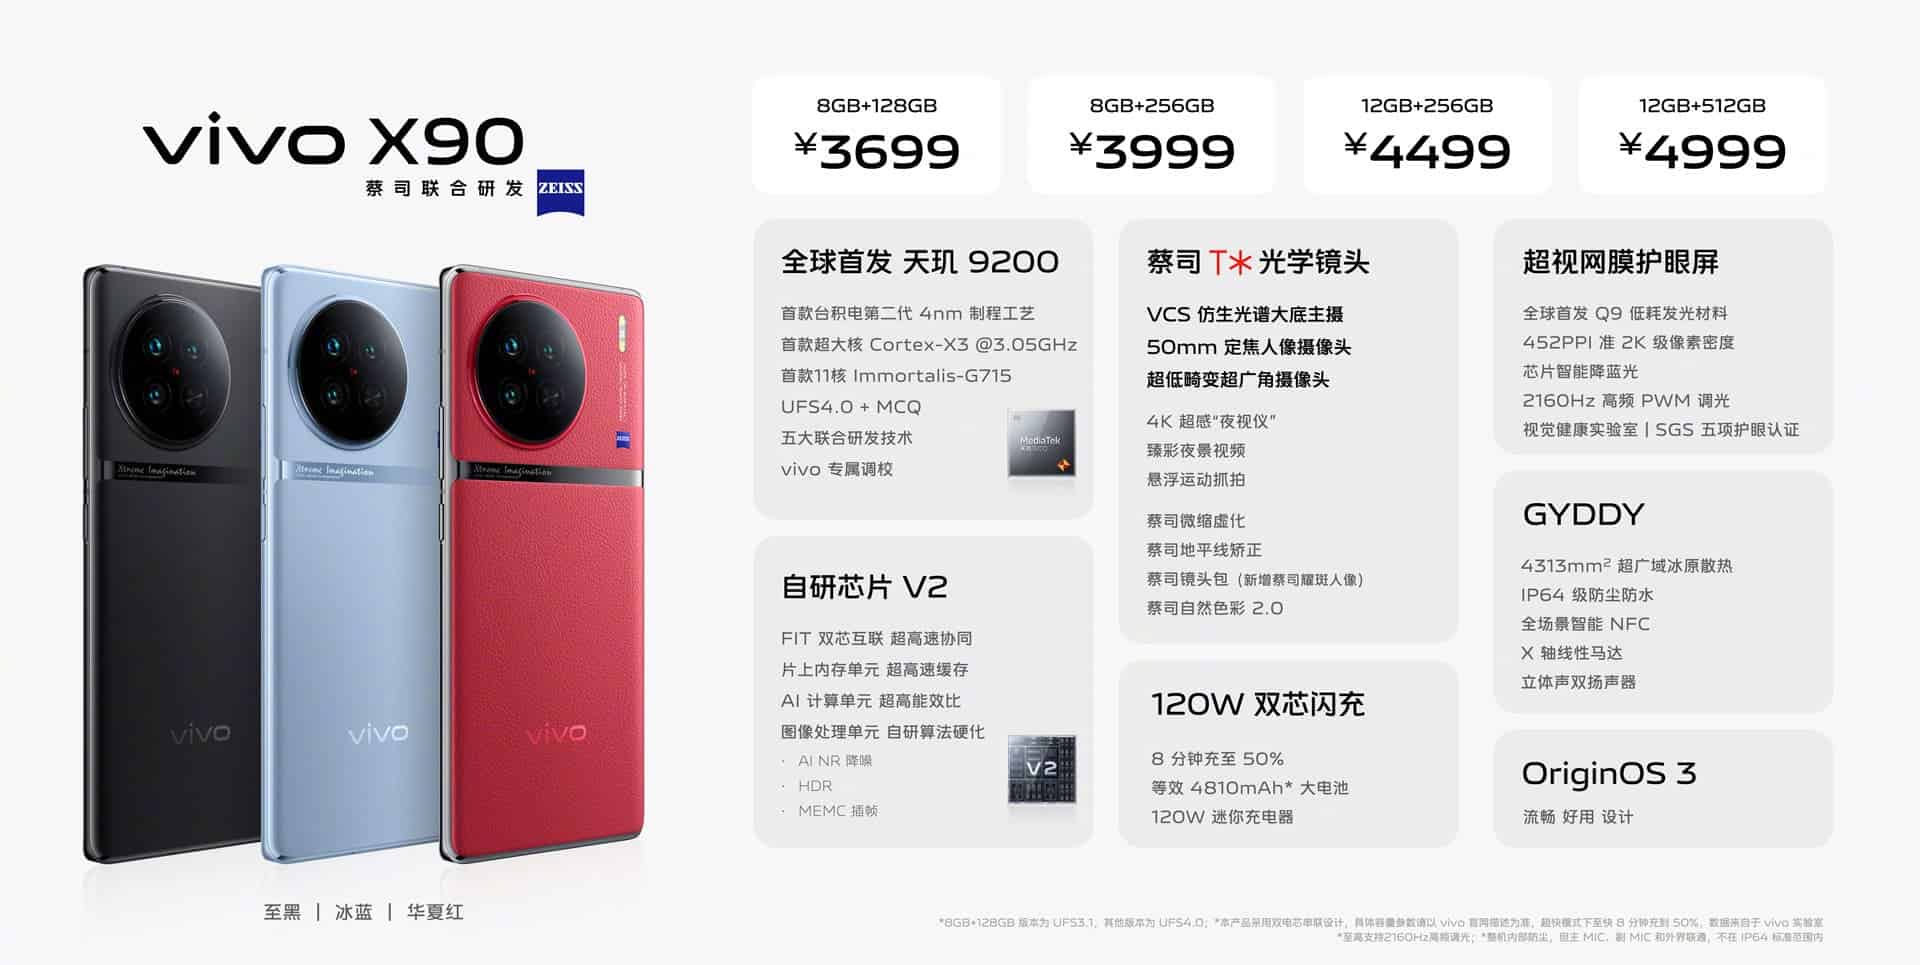 VIVO X90 price